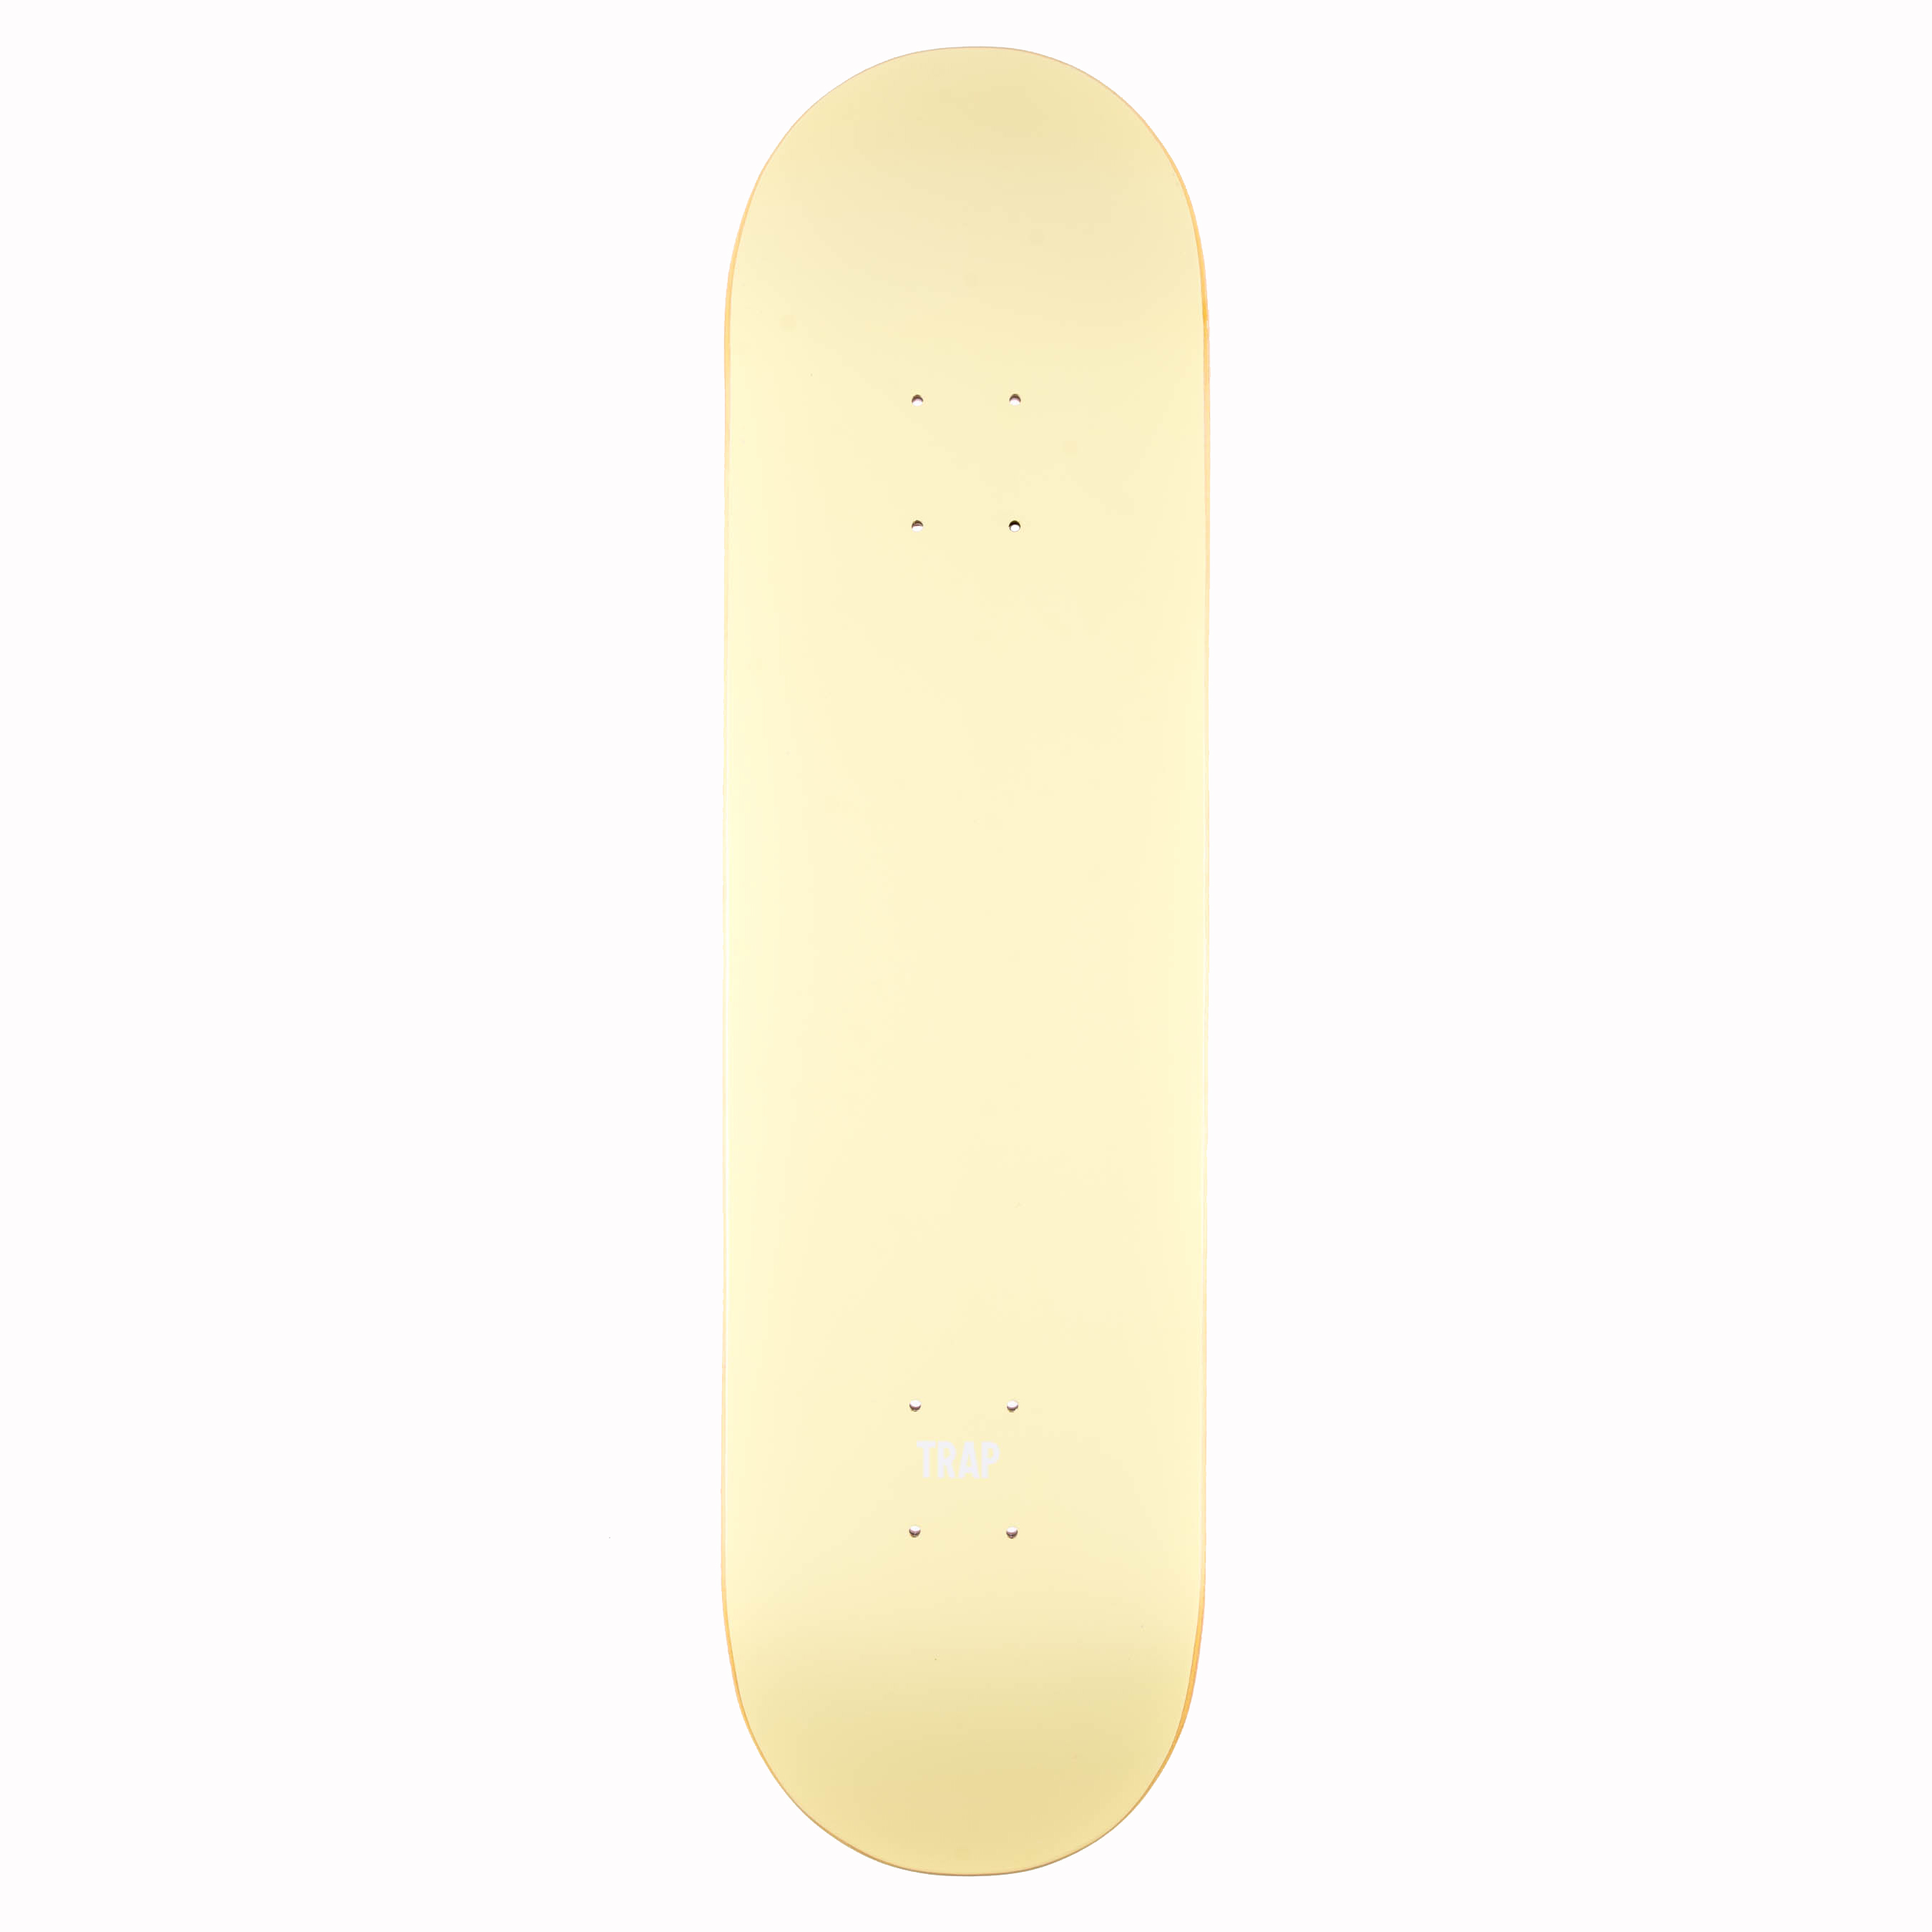 Trap Skateboard Deck Monochrome Series 8.25" (yellow)